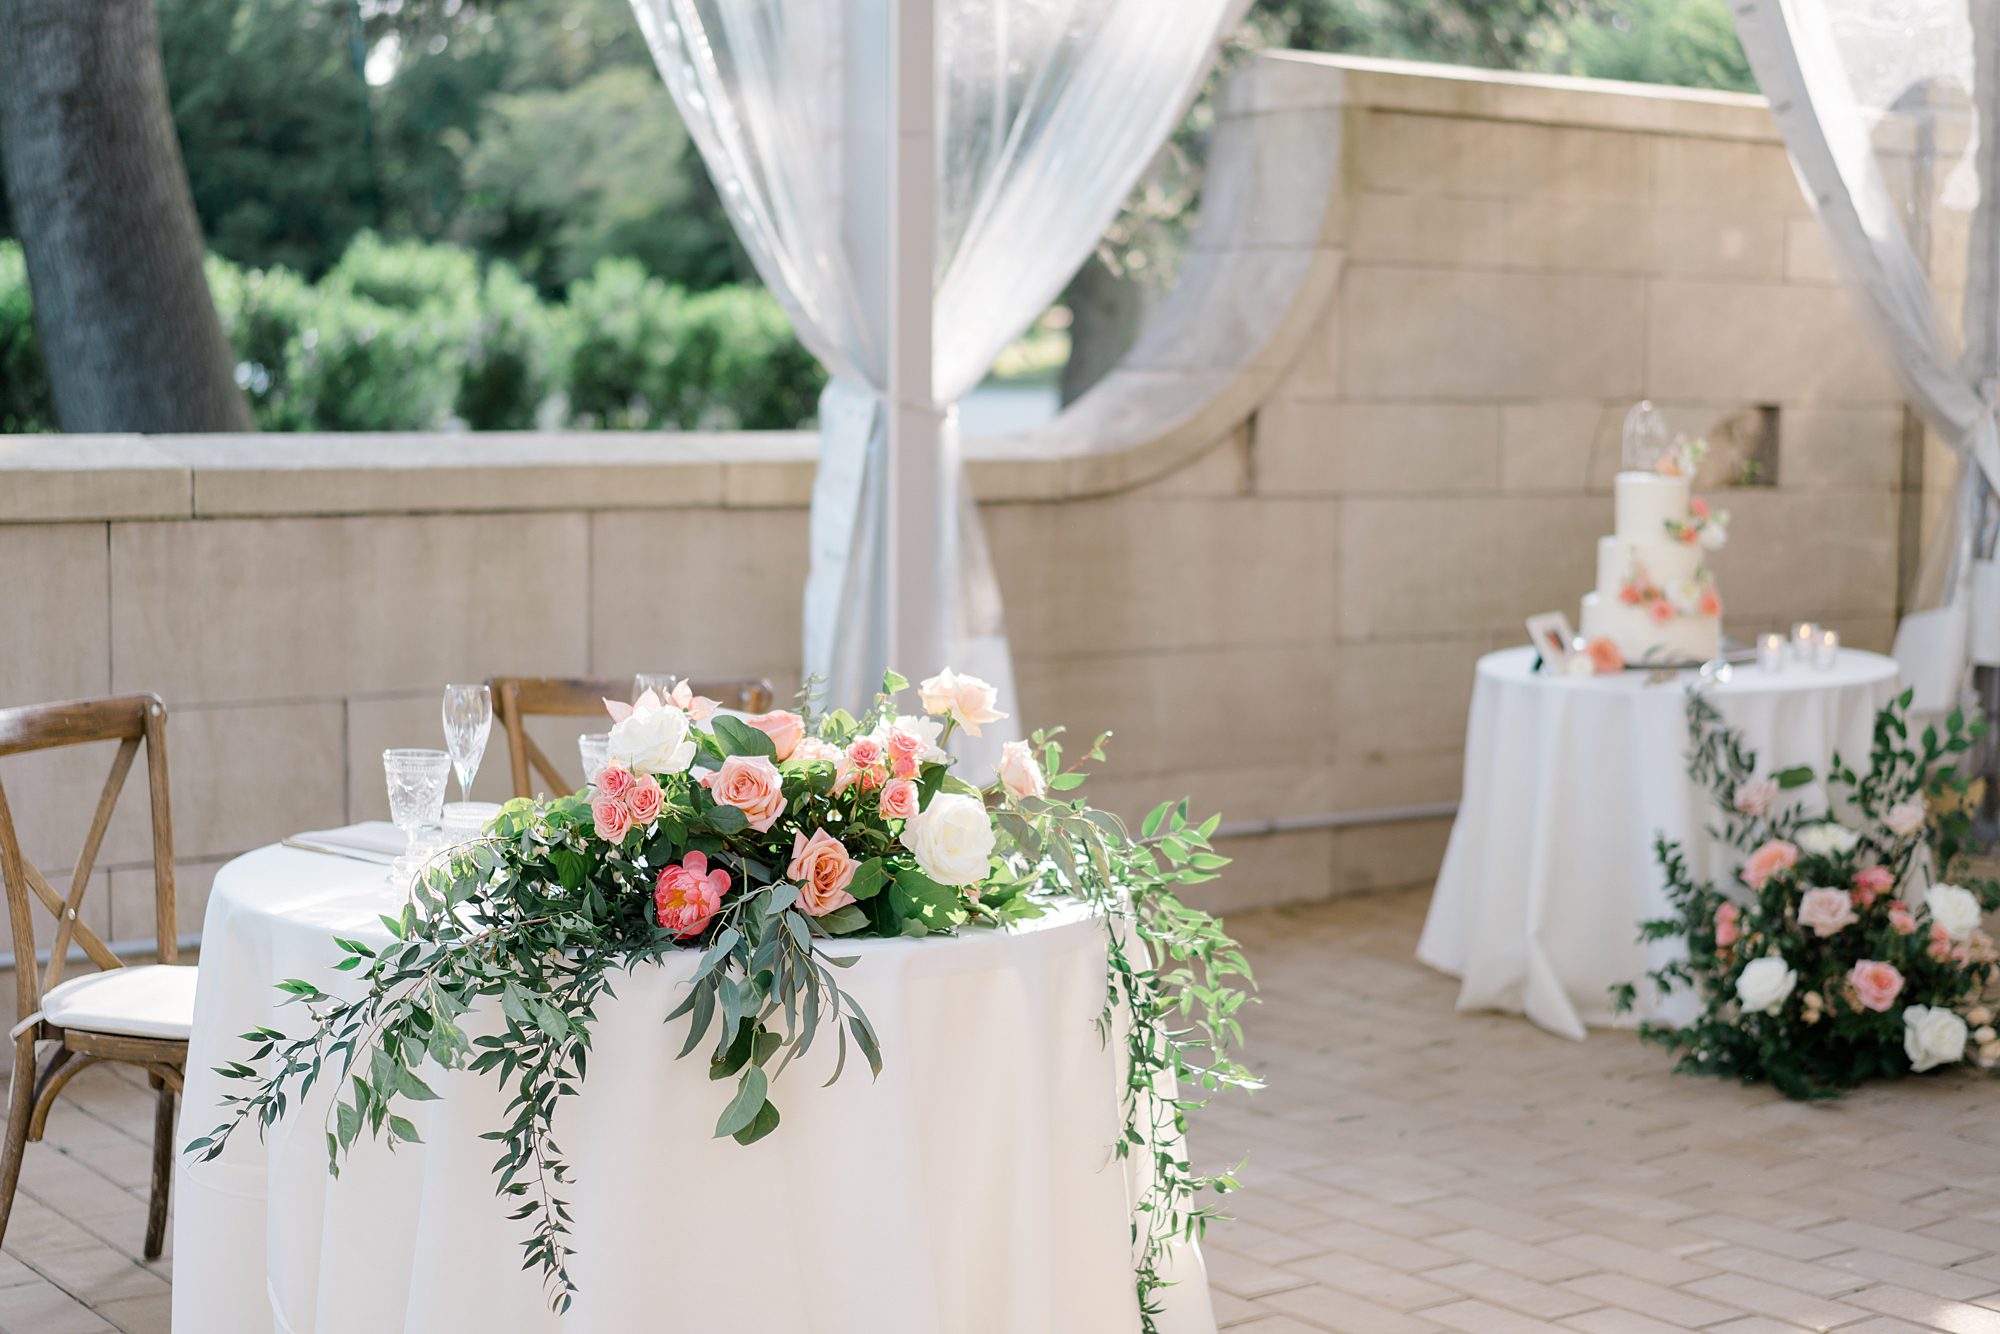 romantic florals decorate Curtis Arboretum outdoor tented Wedding reception 